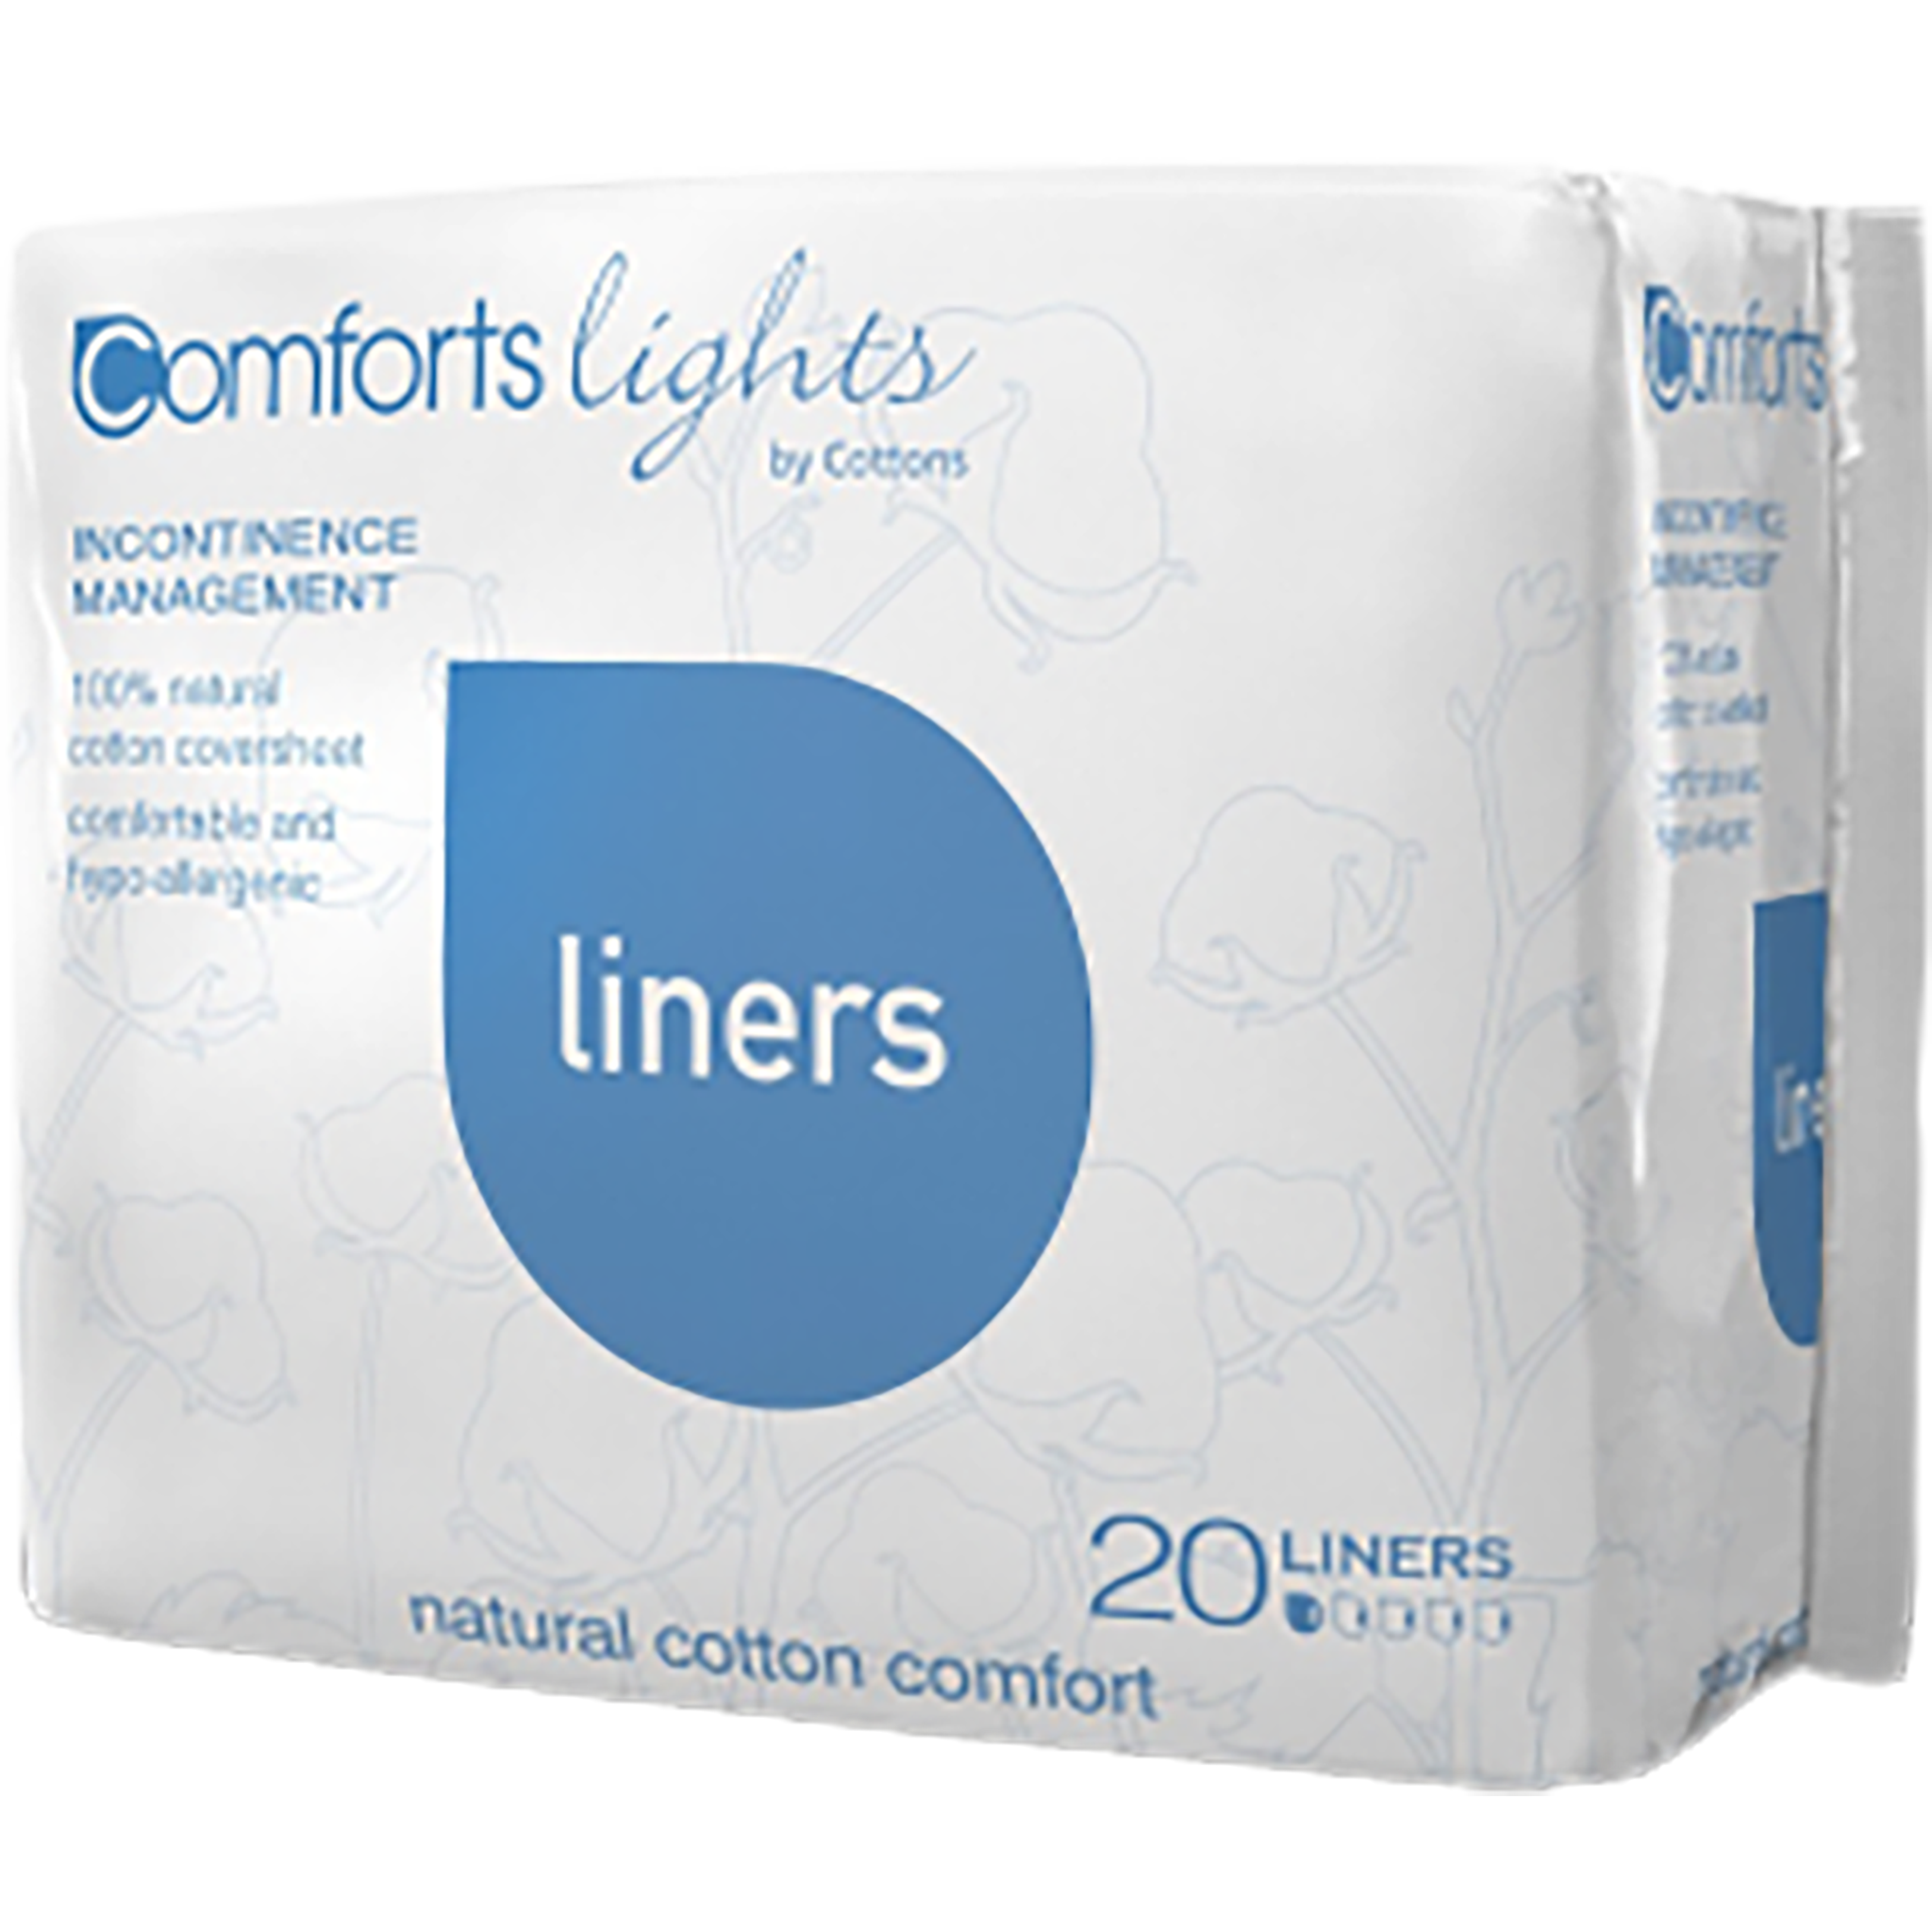 Comfort Lights - Liners